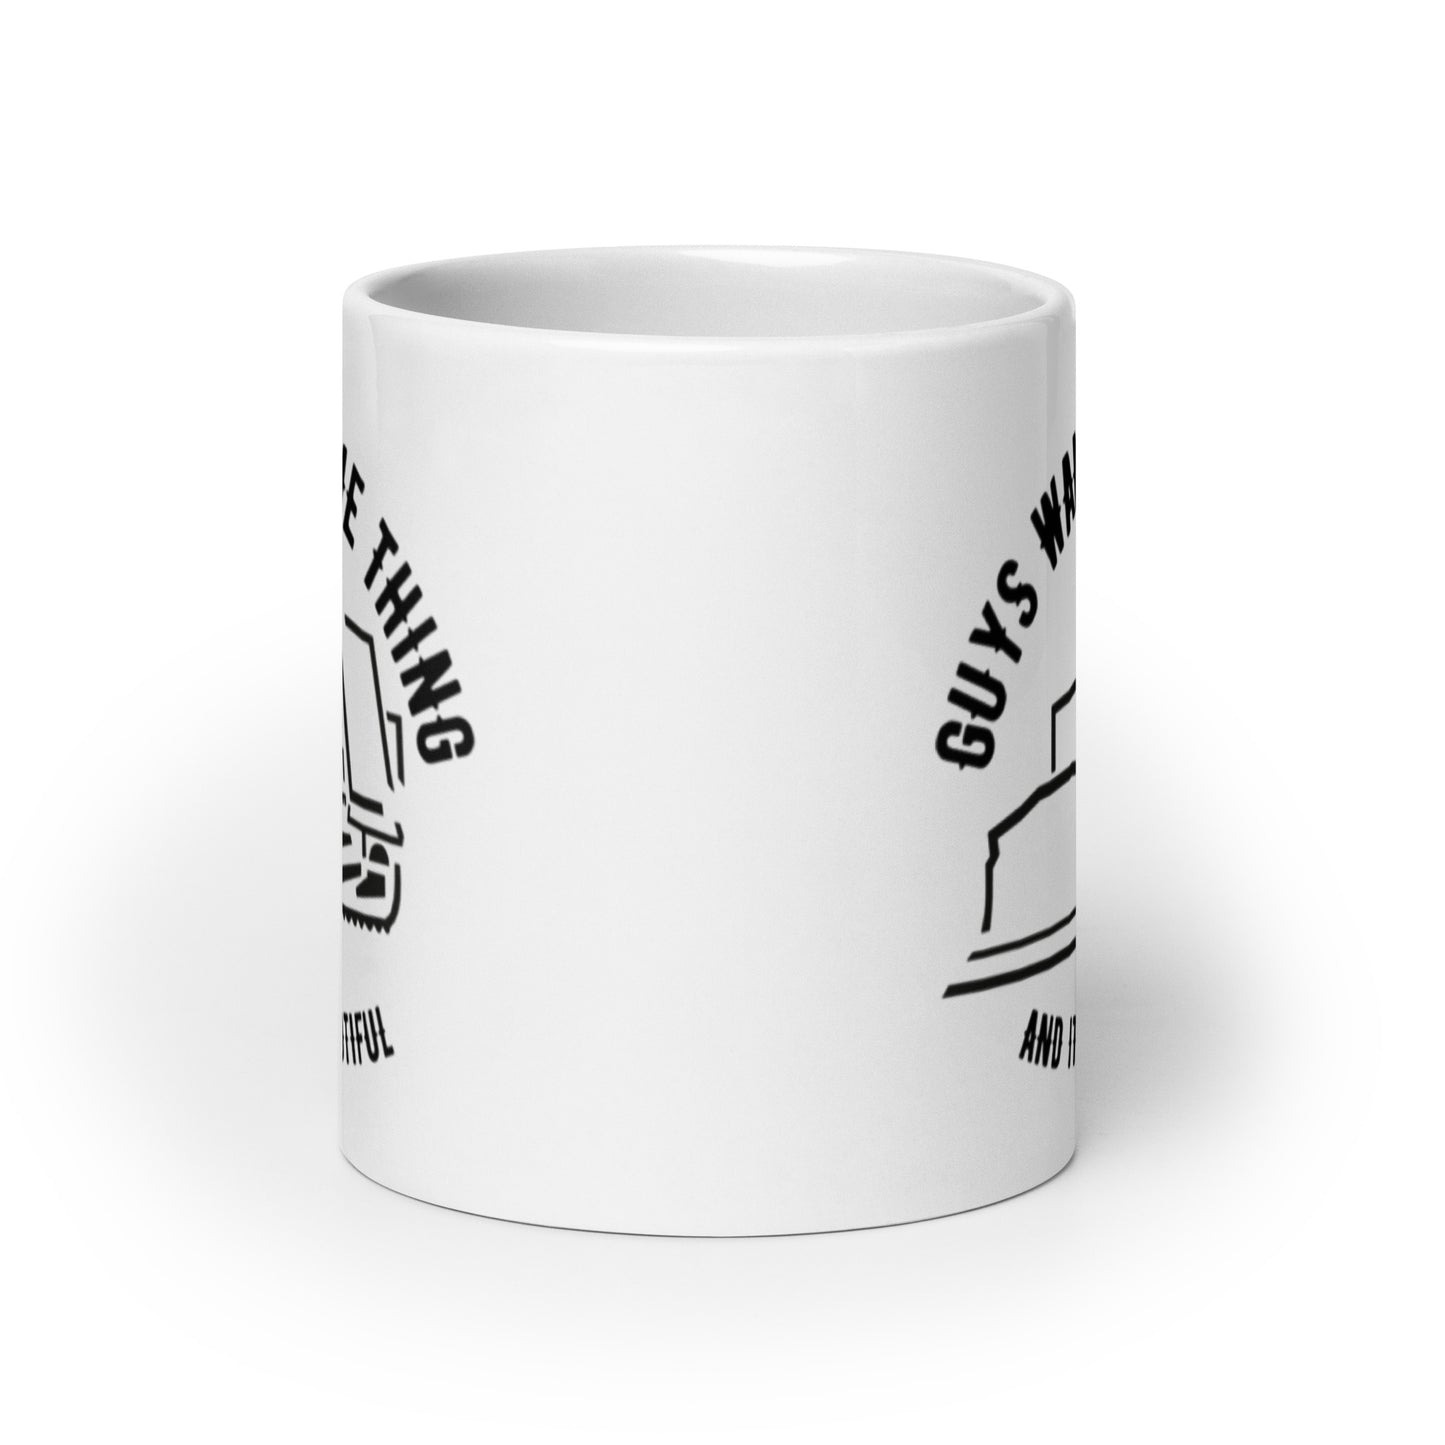 Guys Want One Thing, Killdozer Mug